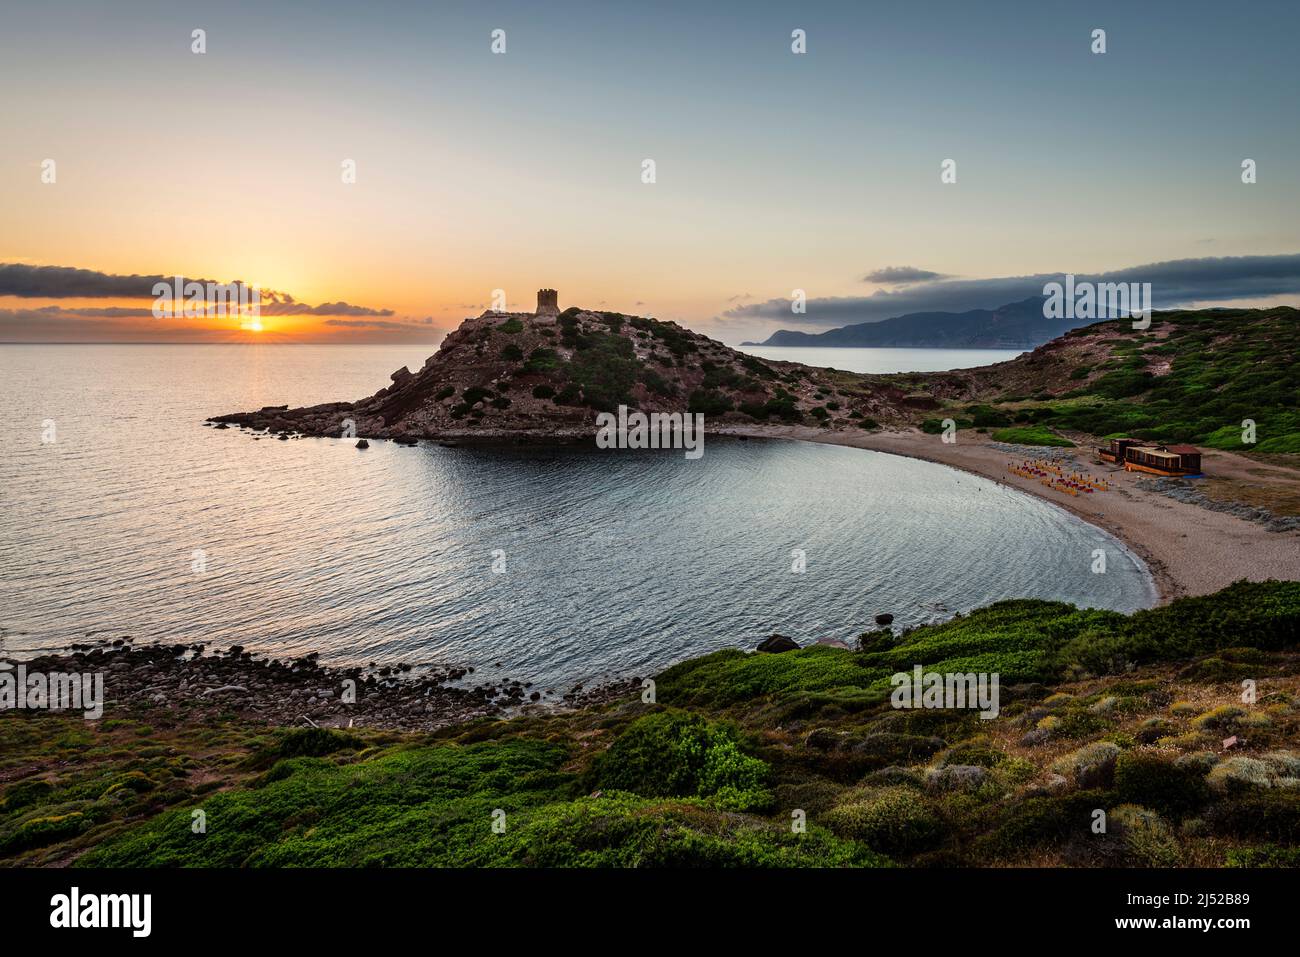 Romantique méditerranée paysage côtier - coucher de soleil à la tour de guet et la plage de la baie Torre del Porticciolo sur la côte ouest de la Sardaigne, Italie Banque D'Images